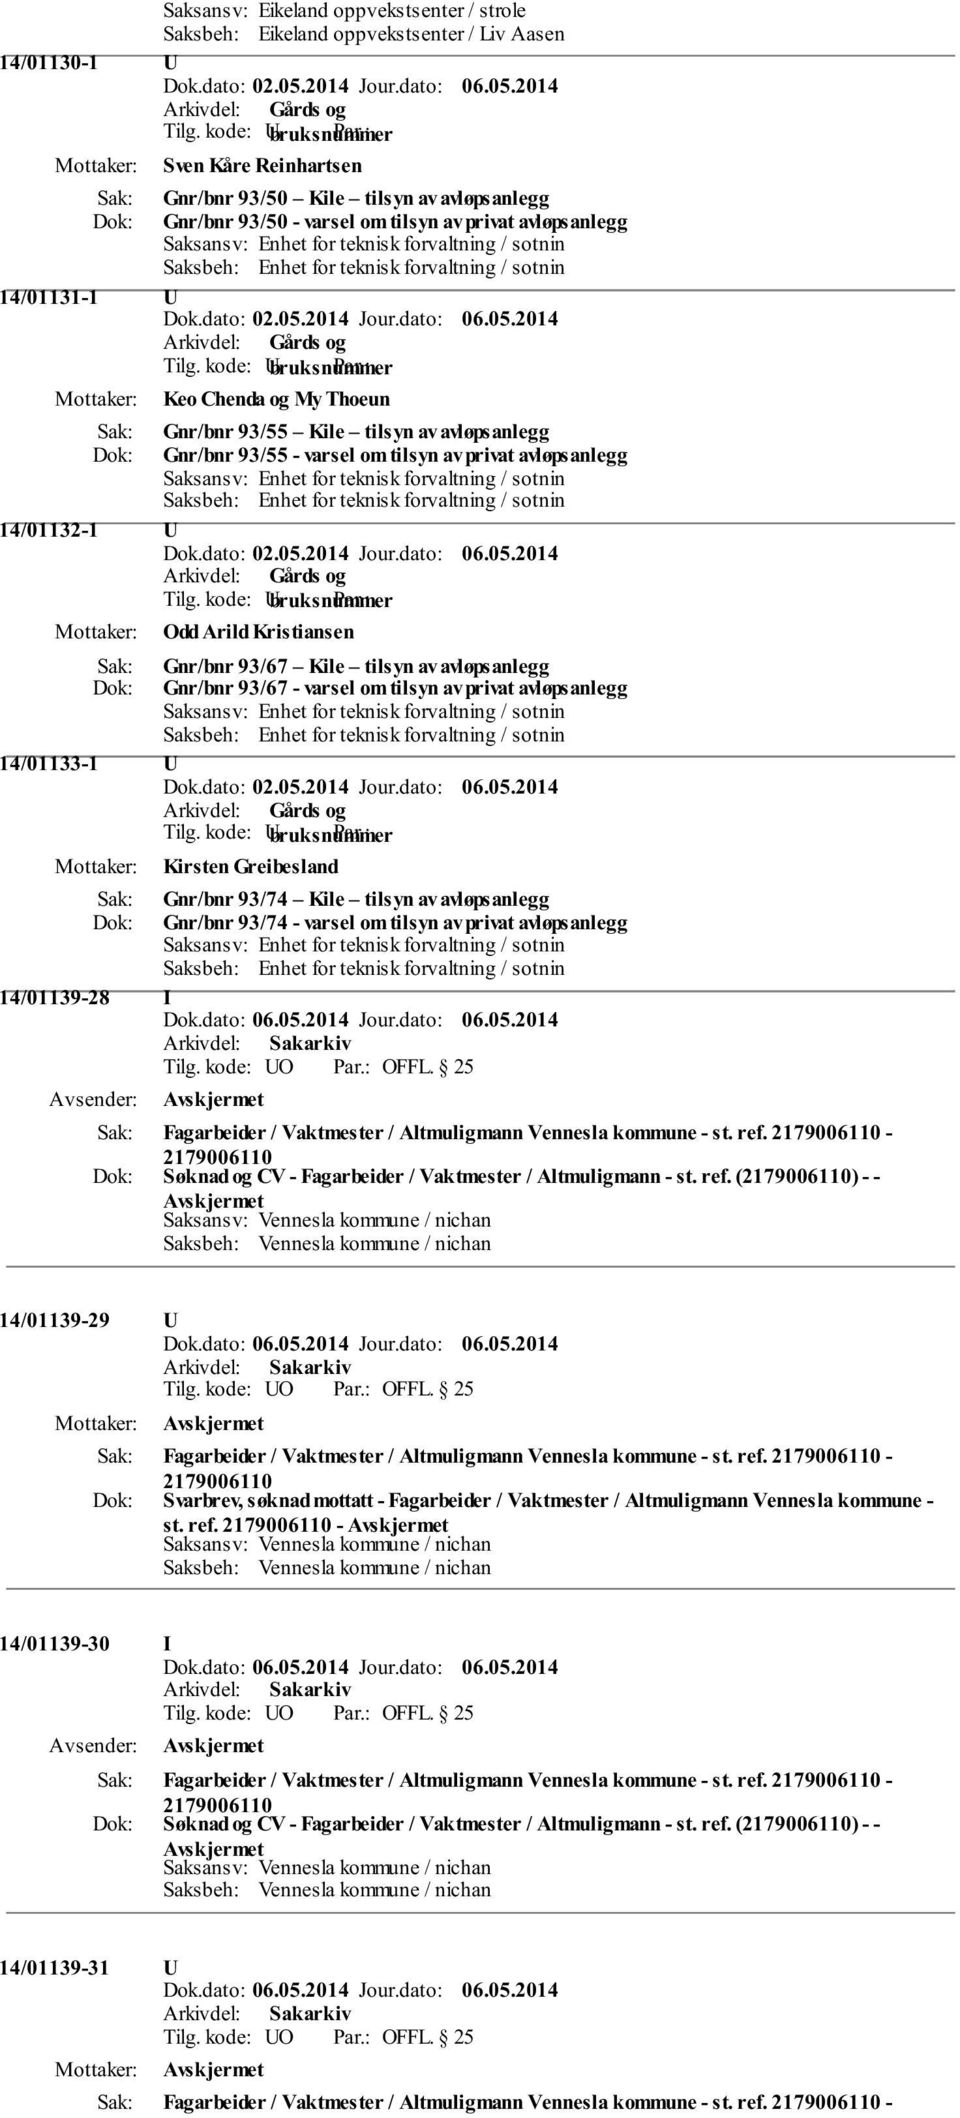 Gnr/bnr 93/55 - varsel om tilsyn av privat avløpsanlegg Saksansv: Enhet for teknisk forvaltning / sotnin Saksbeh: Enhet for teknisk forvaltning / sotnin 14/01132-1 U Odd Arild Kristiansen Gnr/bnr